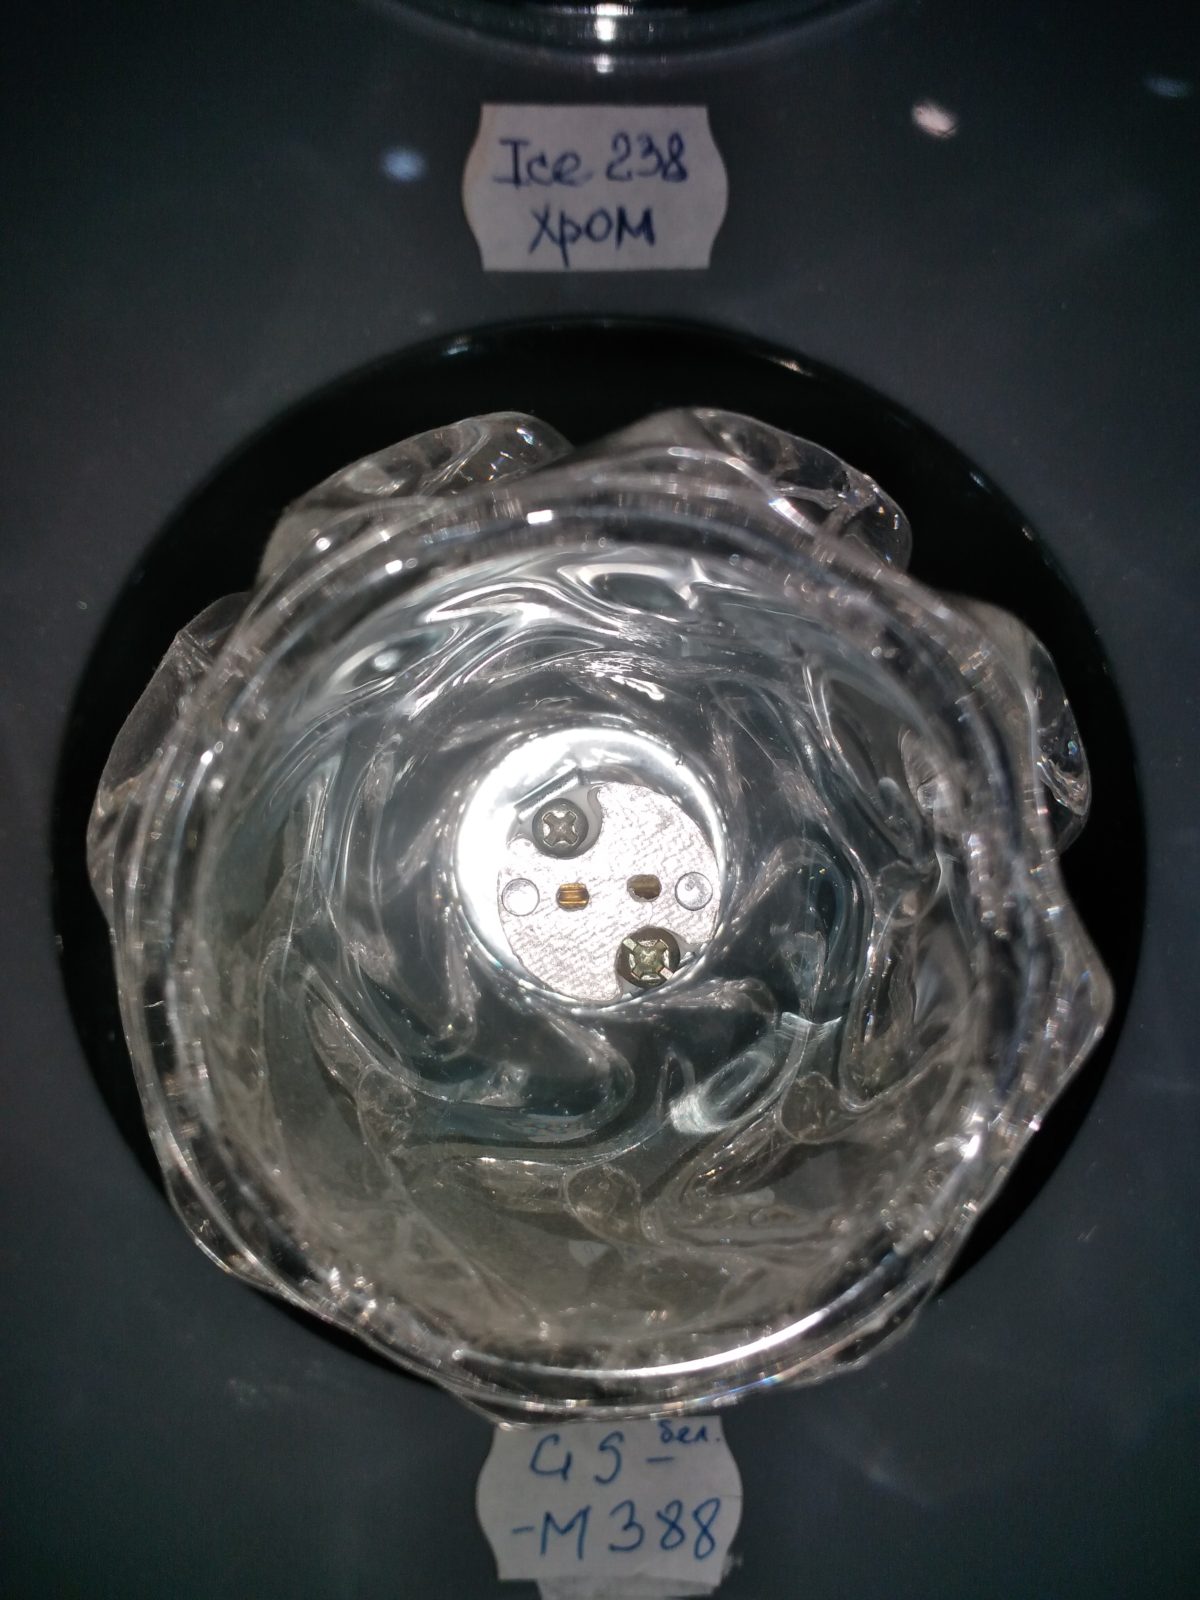 Спот Ice 238 G4 хром  (ЭСф L-238) с лампой